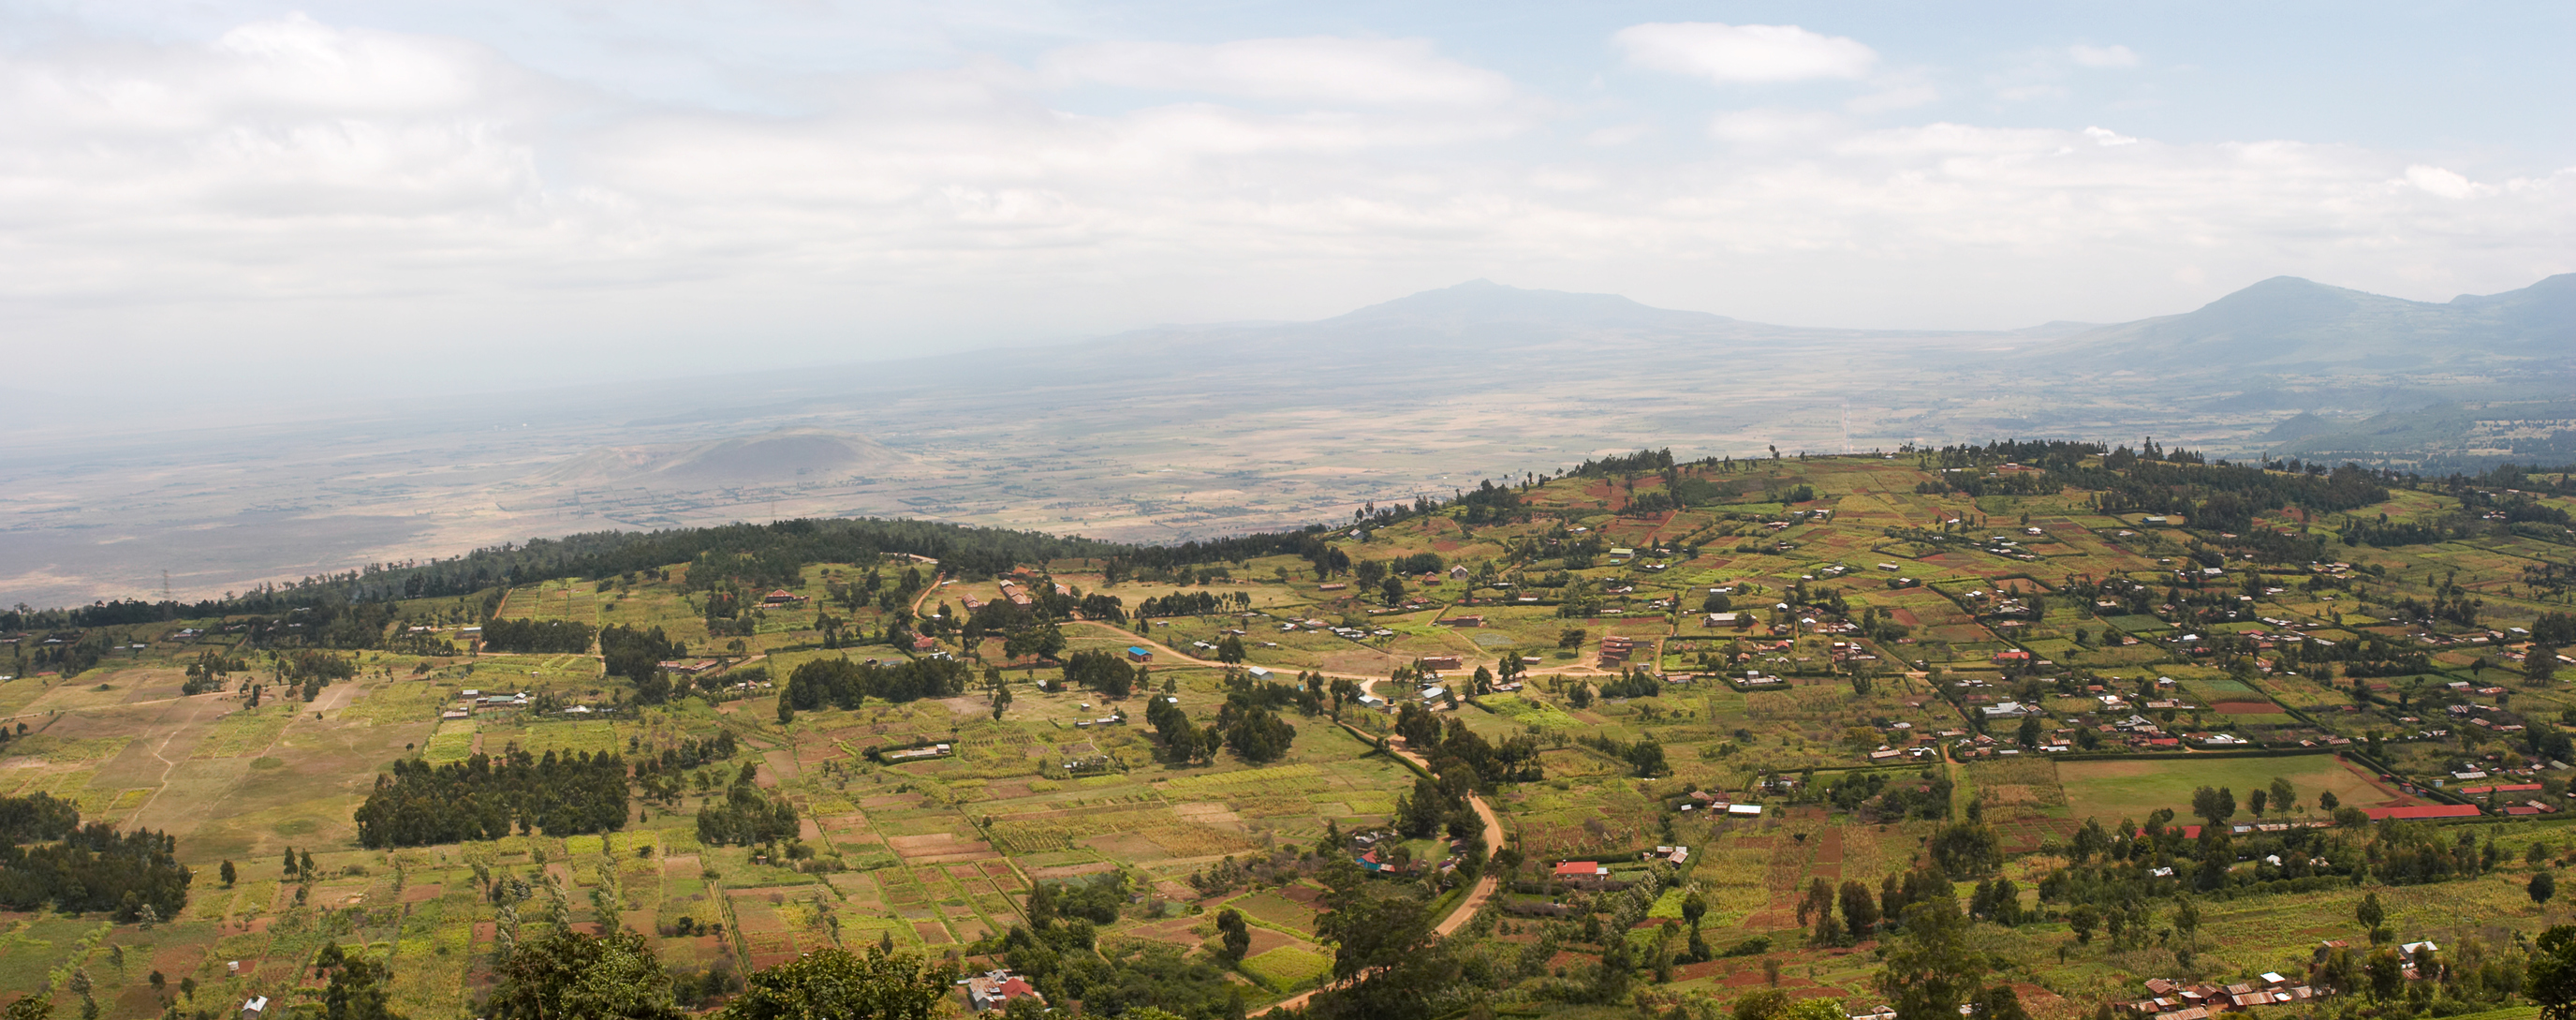 Kenya’s Rift Valley